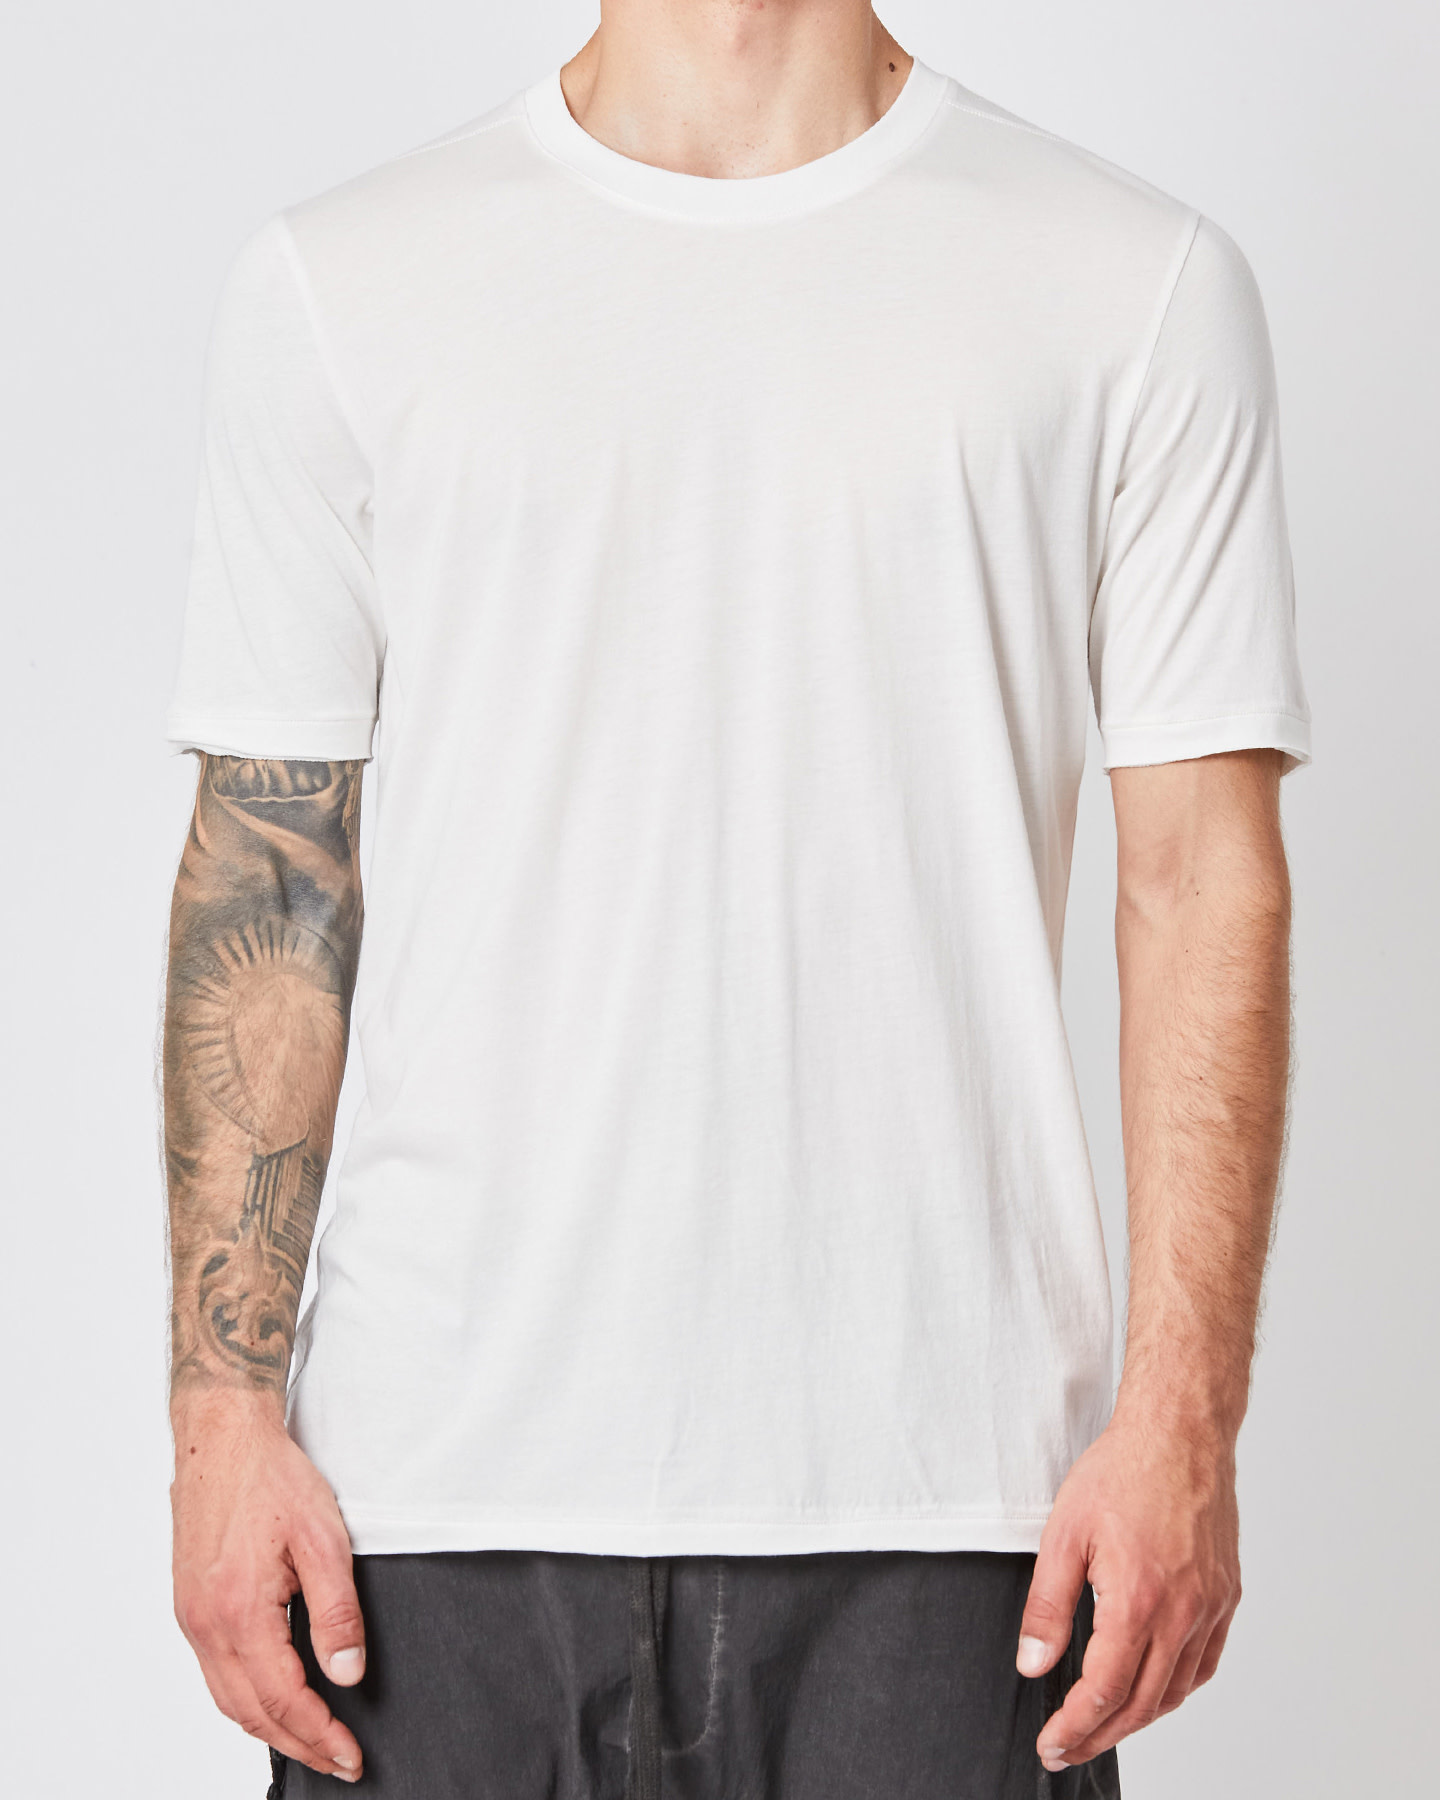 Mens Off-White T-Shirts